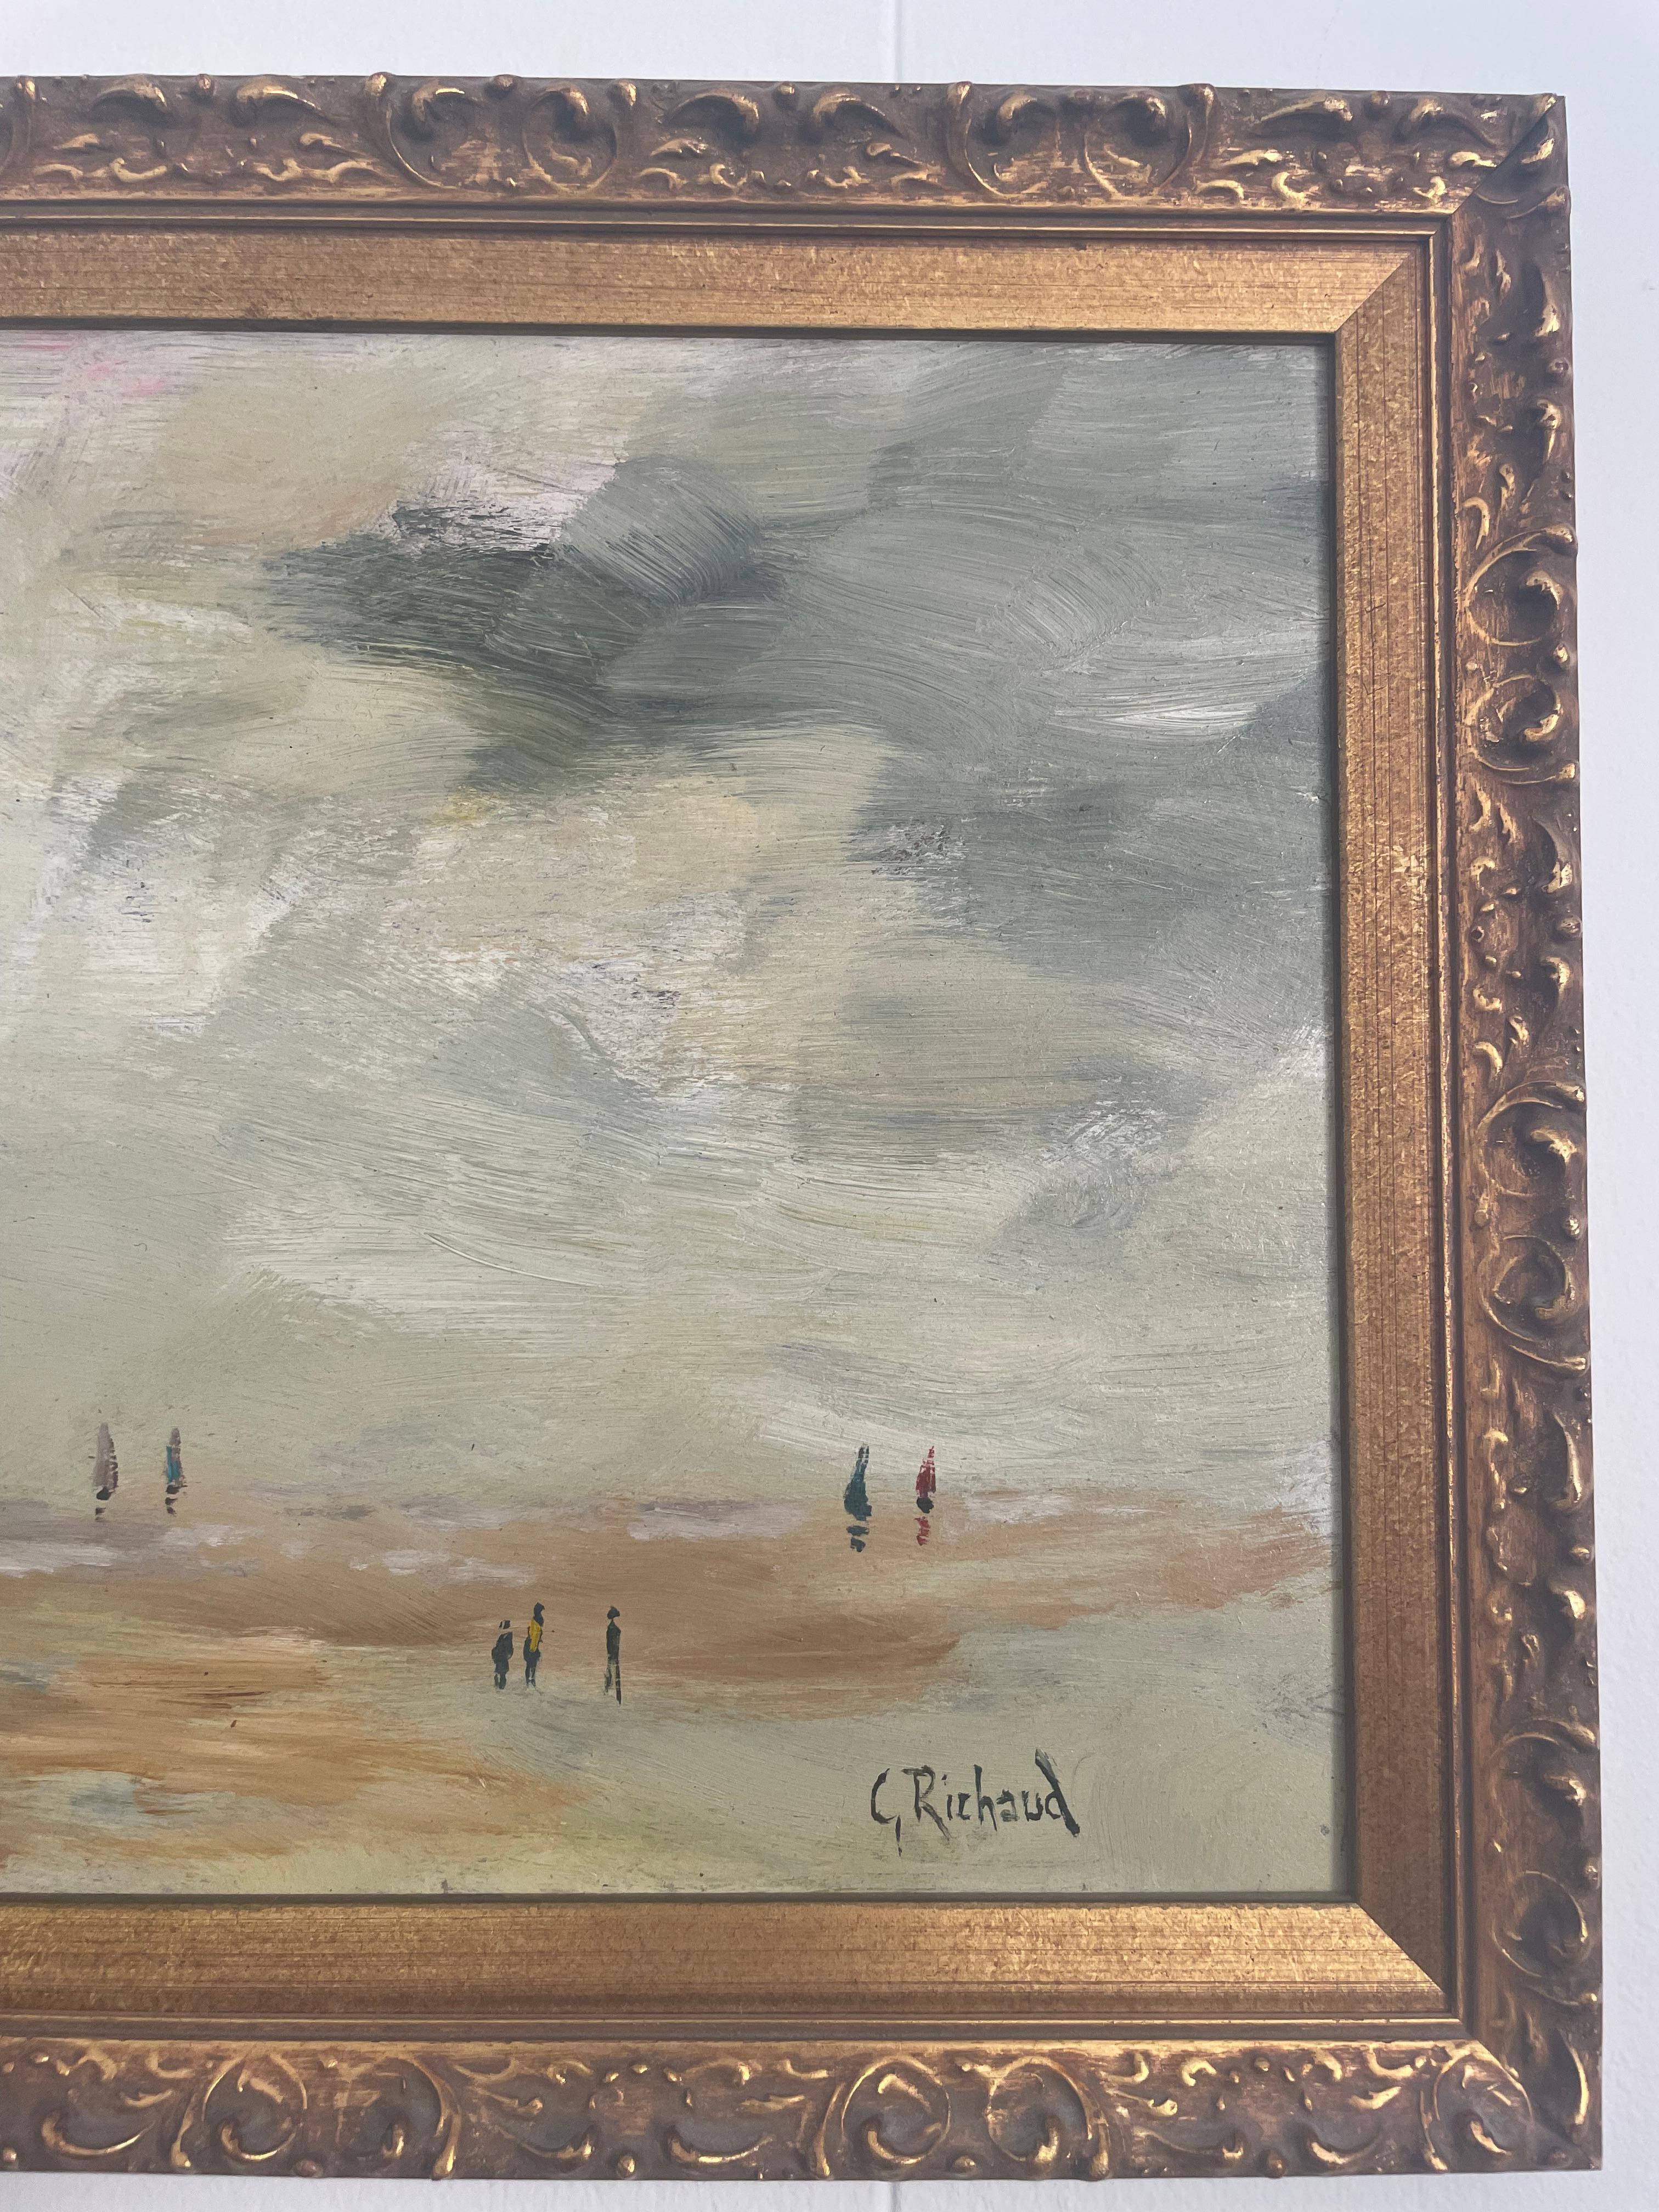 Öl auf Leinwand, signiert von dem französischen Künstler Georges Richaud. 
Das Gemälde zeigt Menschen an einem Strand, an dem eine französische Flagge im Wind weht. 
G. Richaud ist ein anerkannter französischer Künstler des 20. Jahrhunderts, der